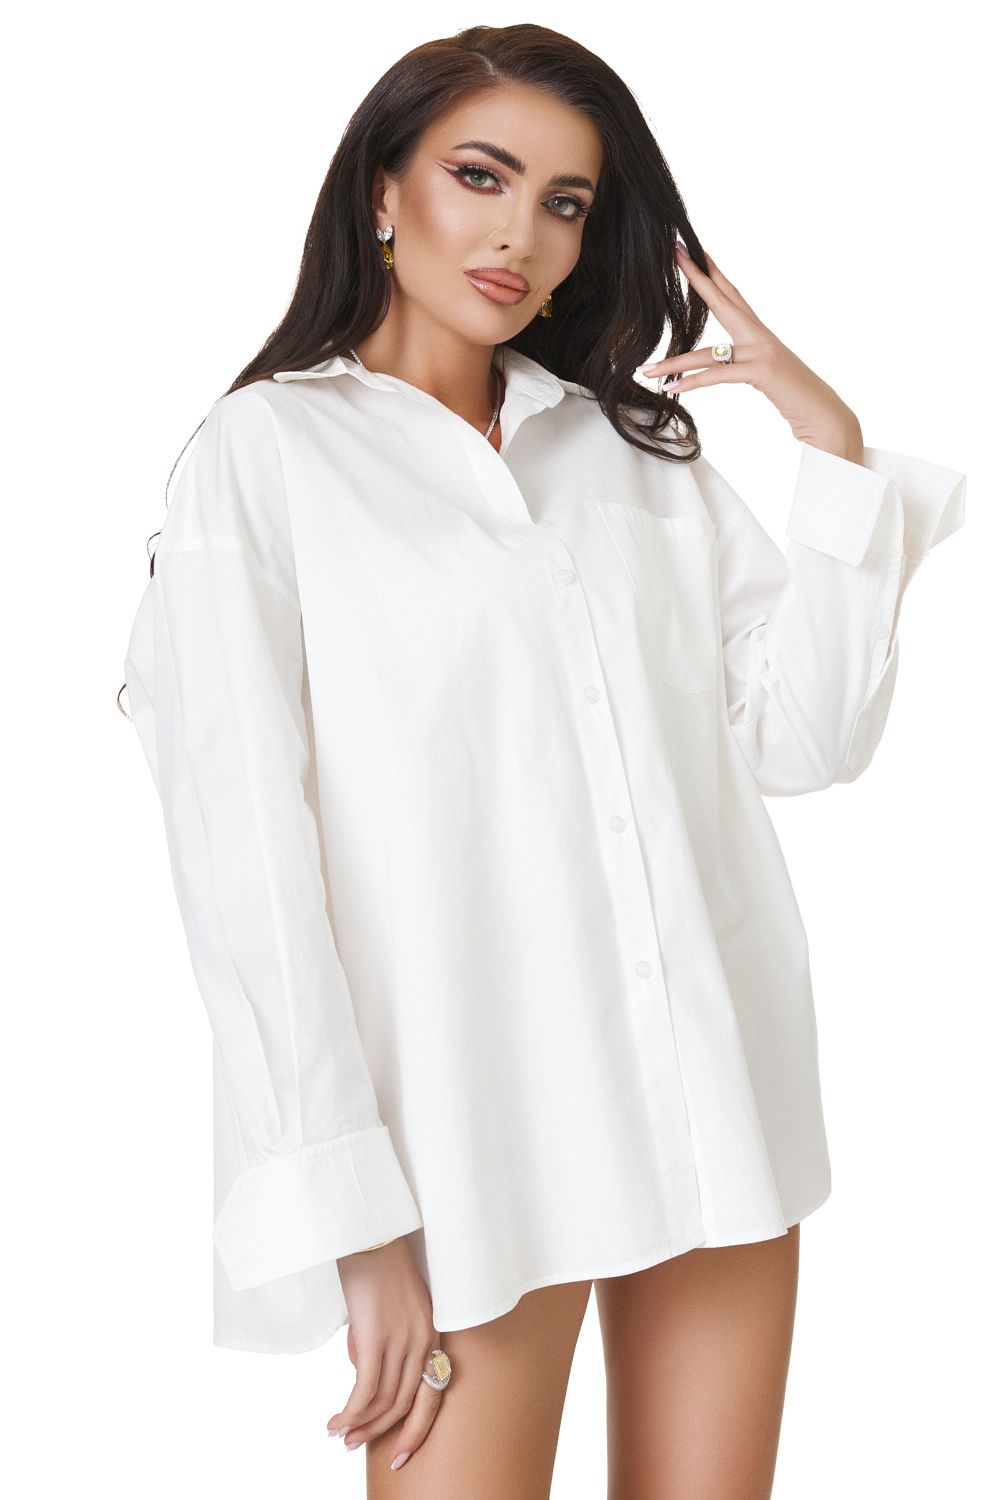 Ladies elegant white shirt Ehtia Bogas